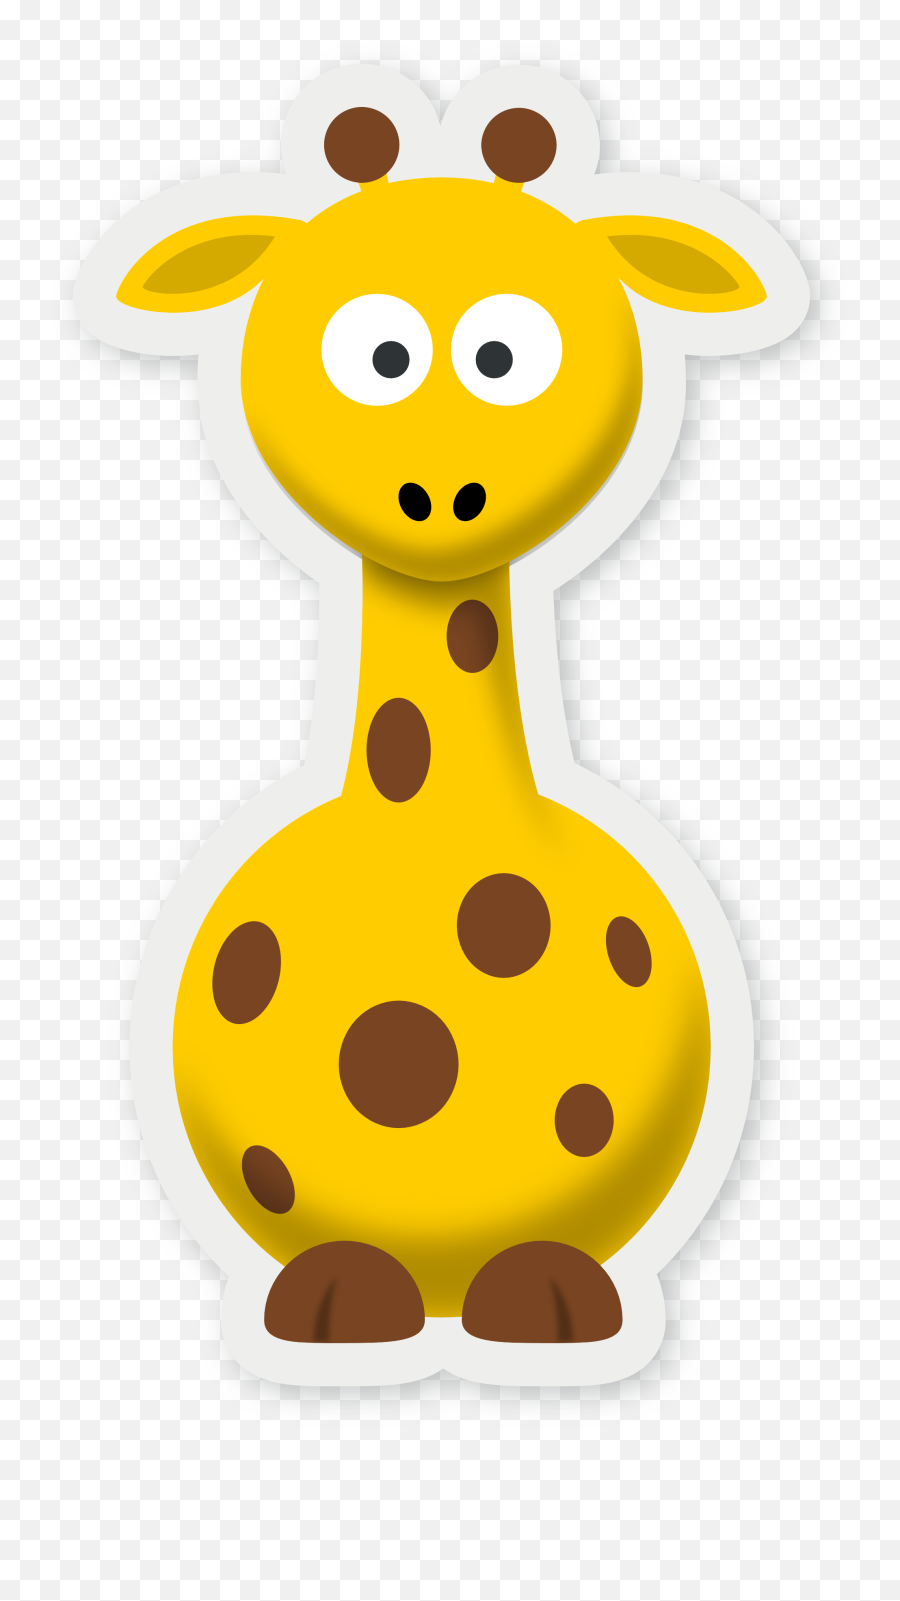 Download Pics Of Cartoon Giraffes - Cartoon Pictures Of Giraffes Png,Giraffe Transparent Background